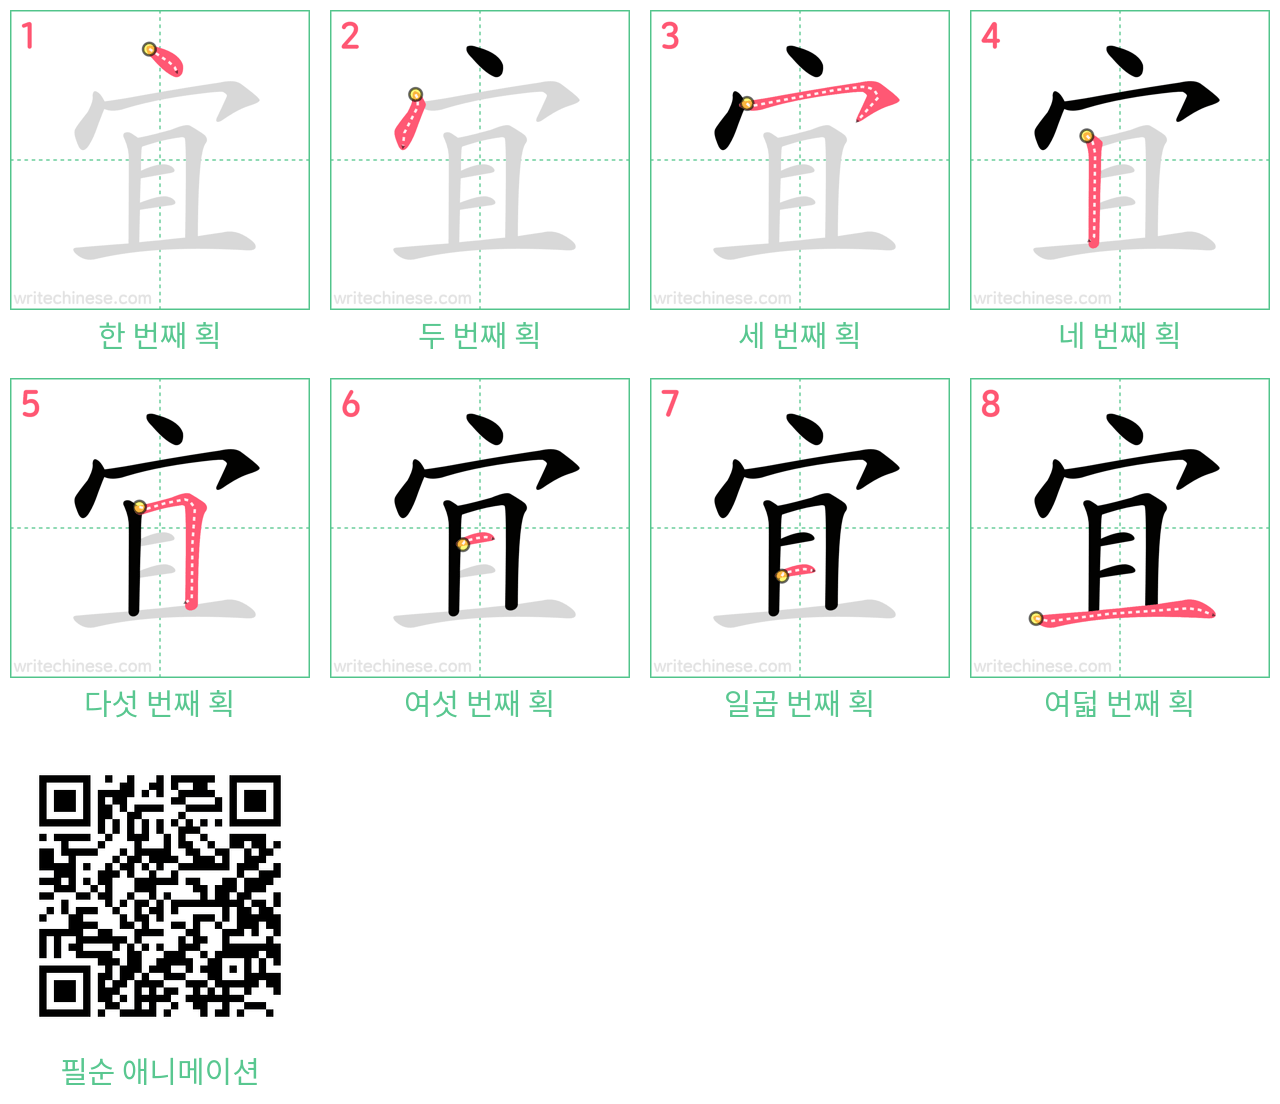 宜 step-by-step stroke order diagrams